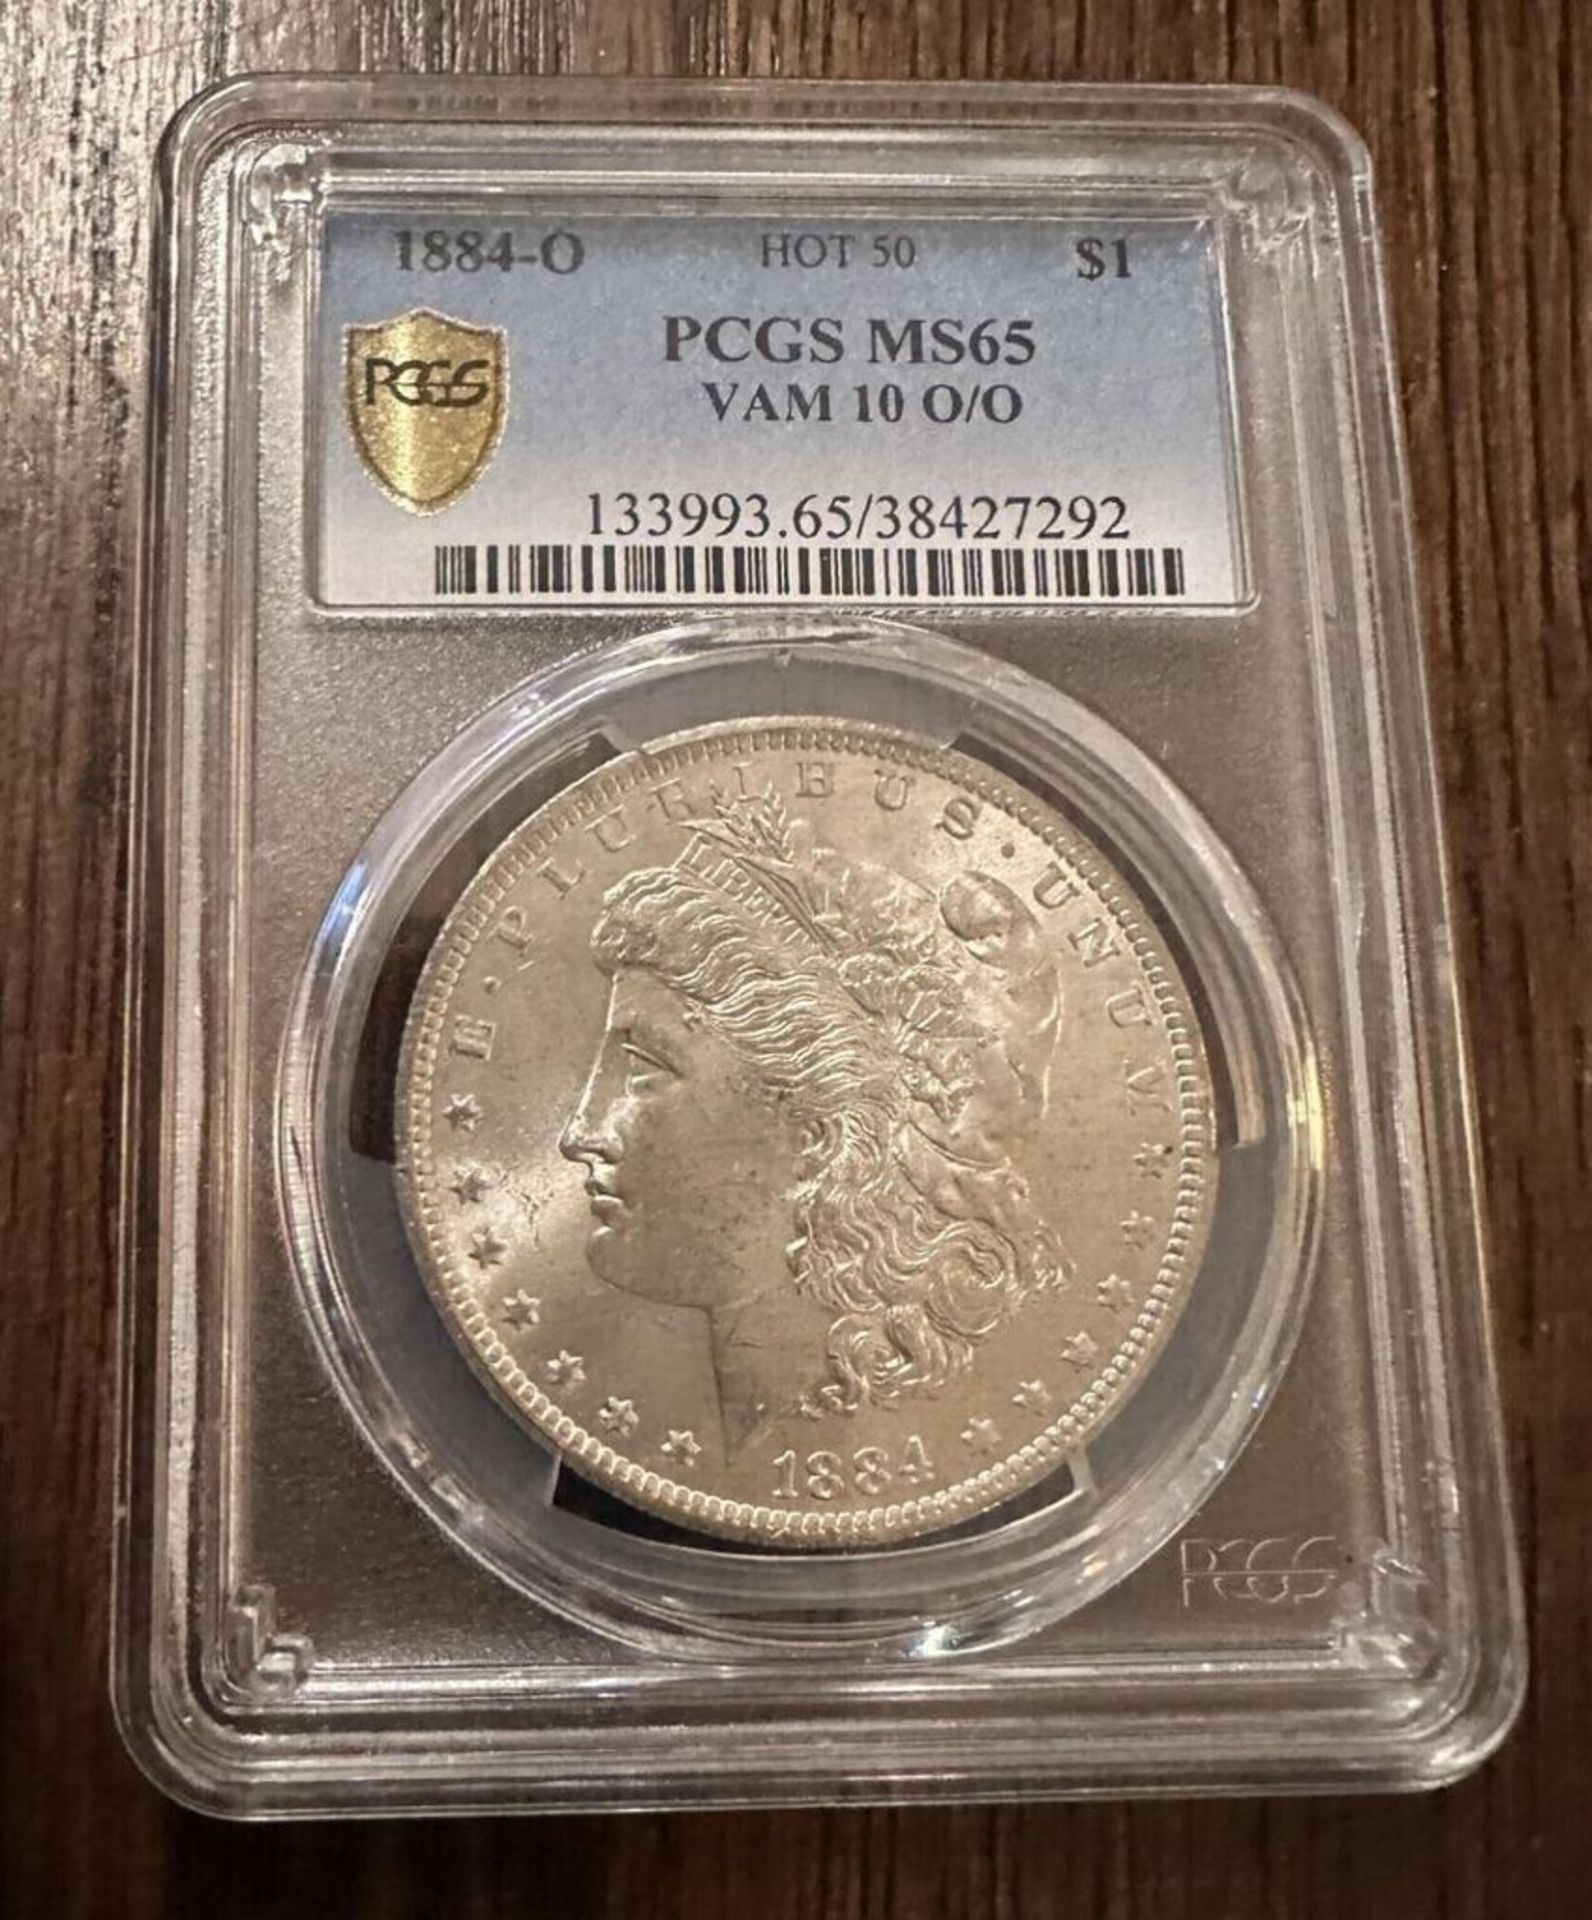 1884-O PCGS MS65 VAM 10 O/O $ 1 COIN